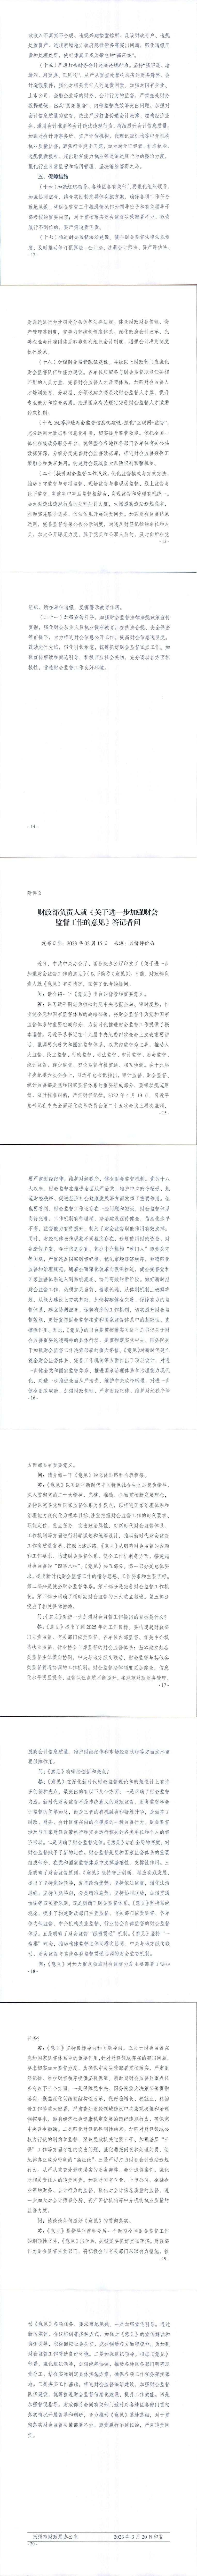 扬州市财政局关于做好《关于进一步加强财会监督工作的意见》学习宣传等工作的通知_01.jpg